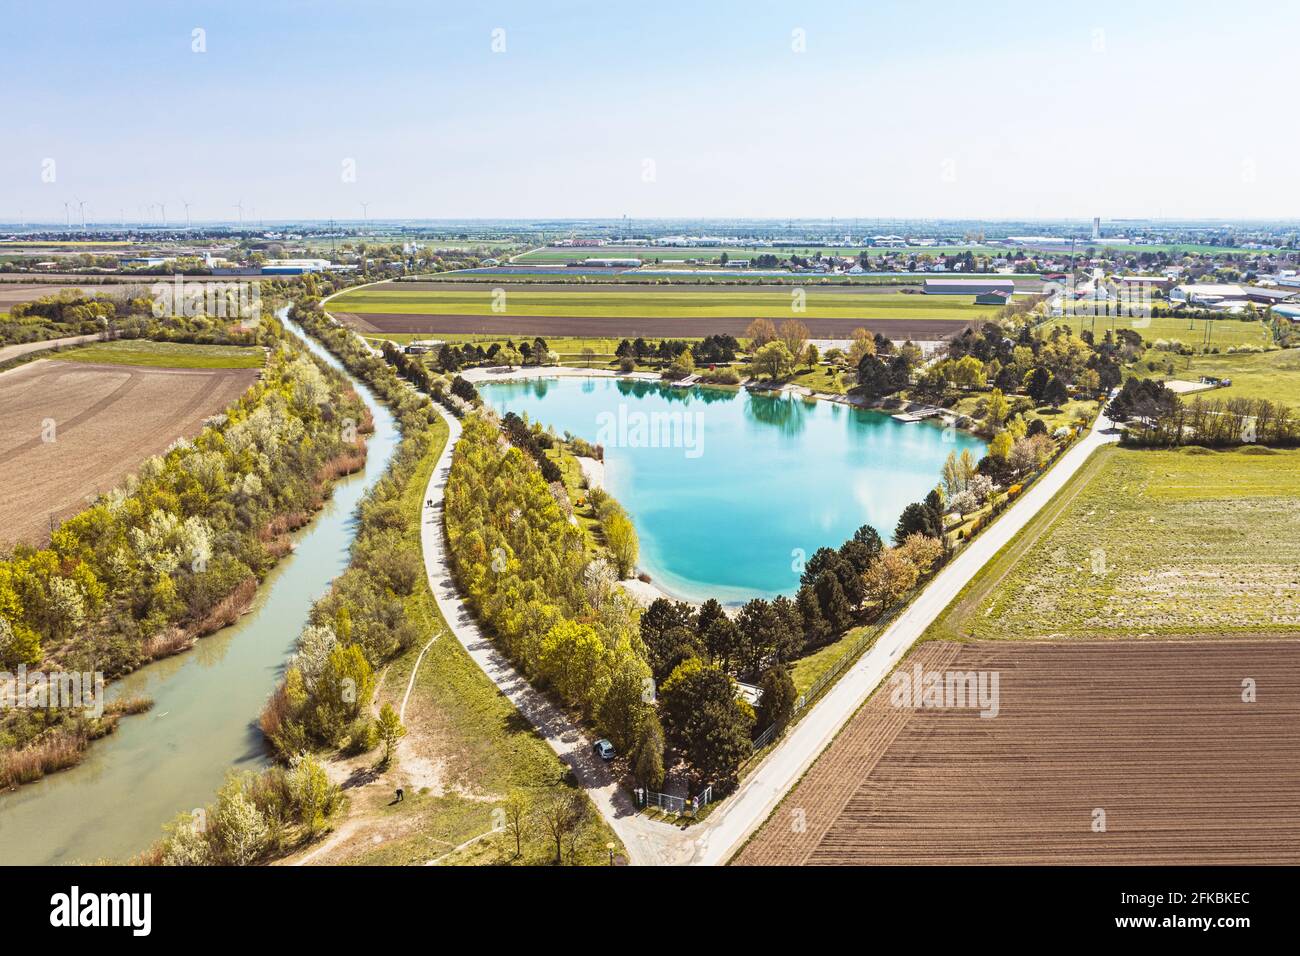 Gerasdorf swimming pond in the Korneuburg district. Weinviertel region in Austria. Stock Photo